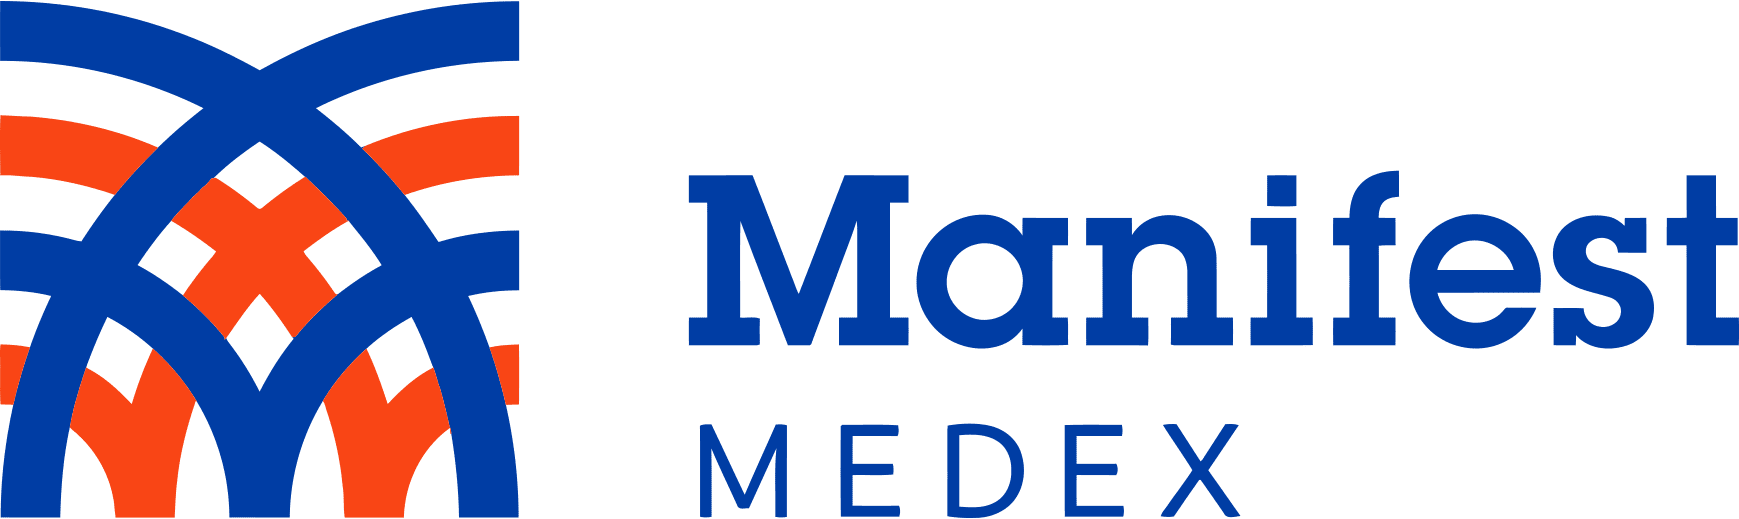 Manifest MedEx Logo